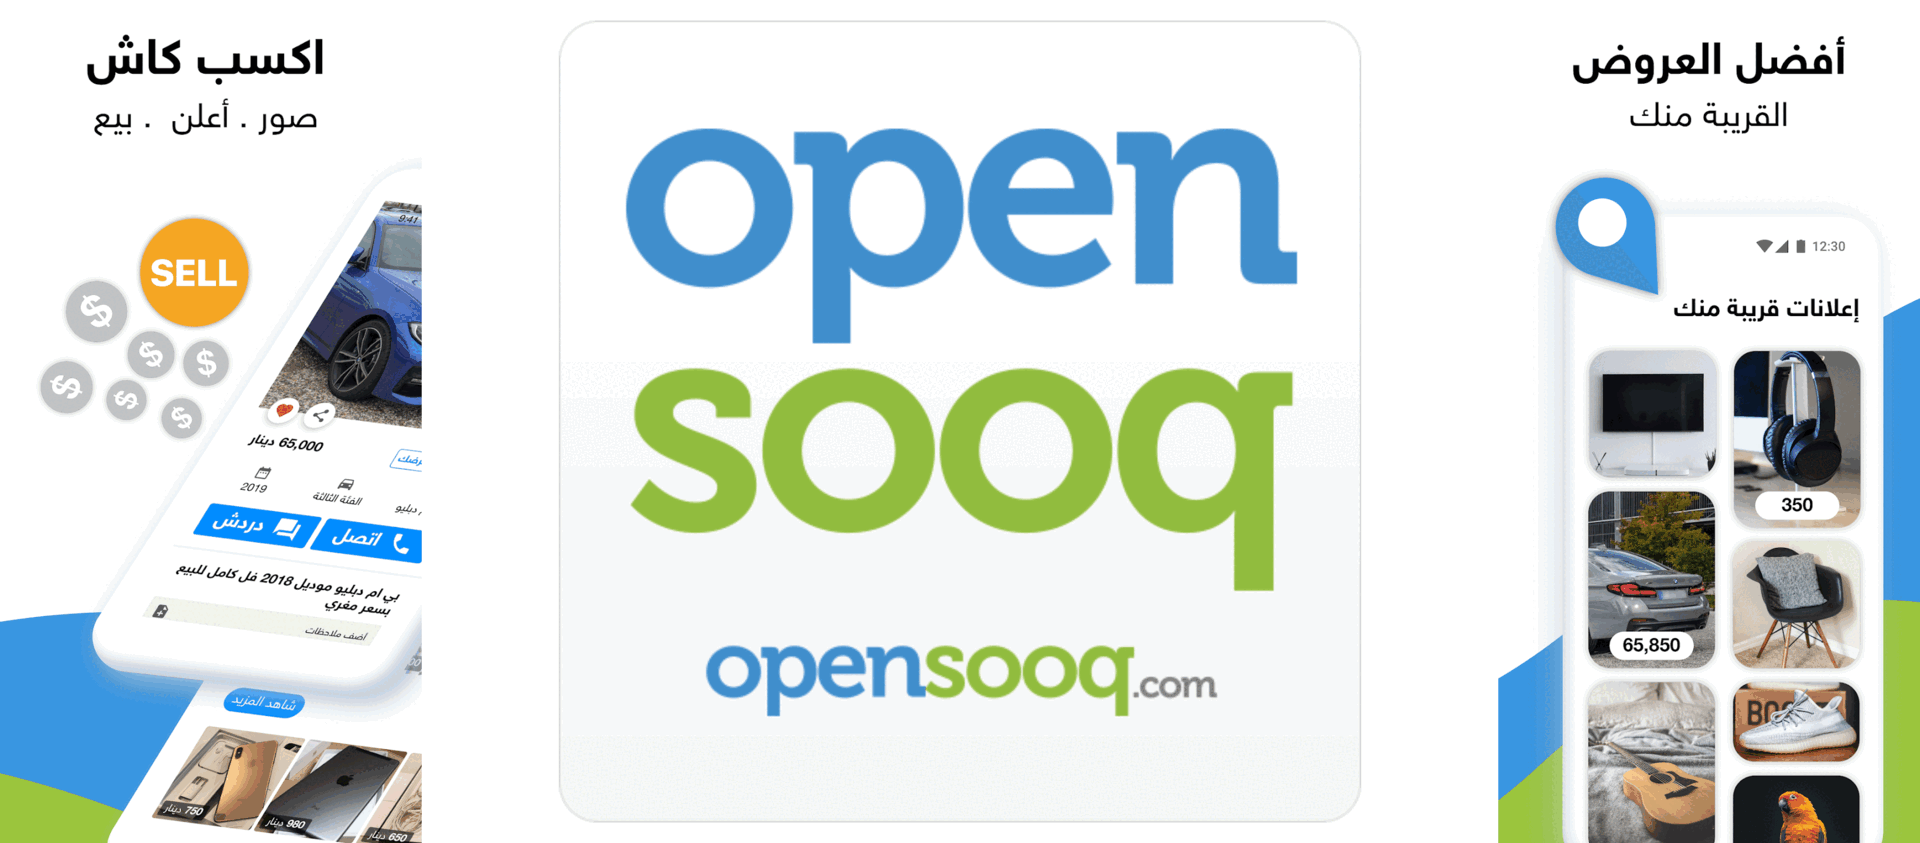 Opensooq